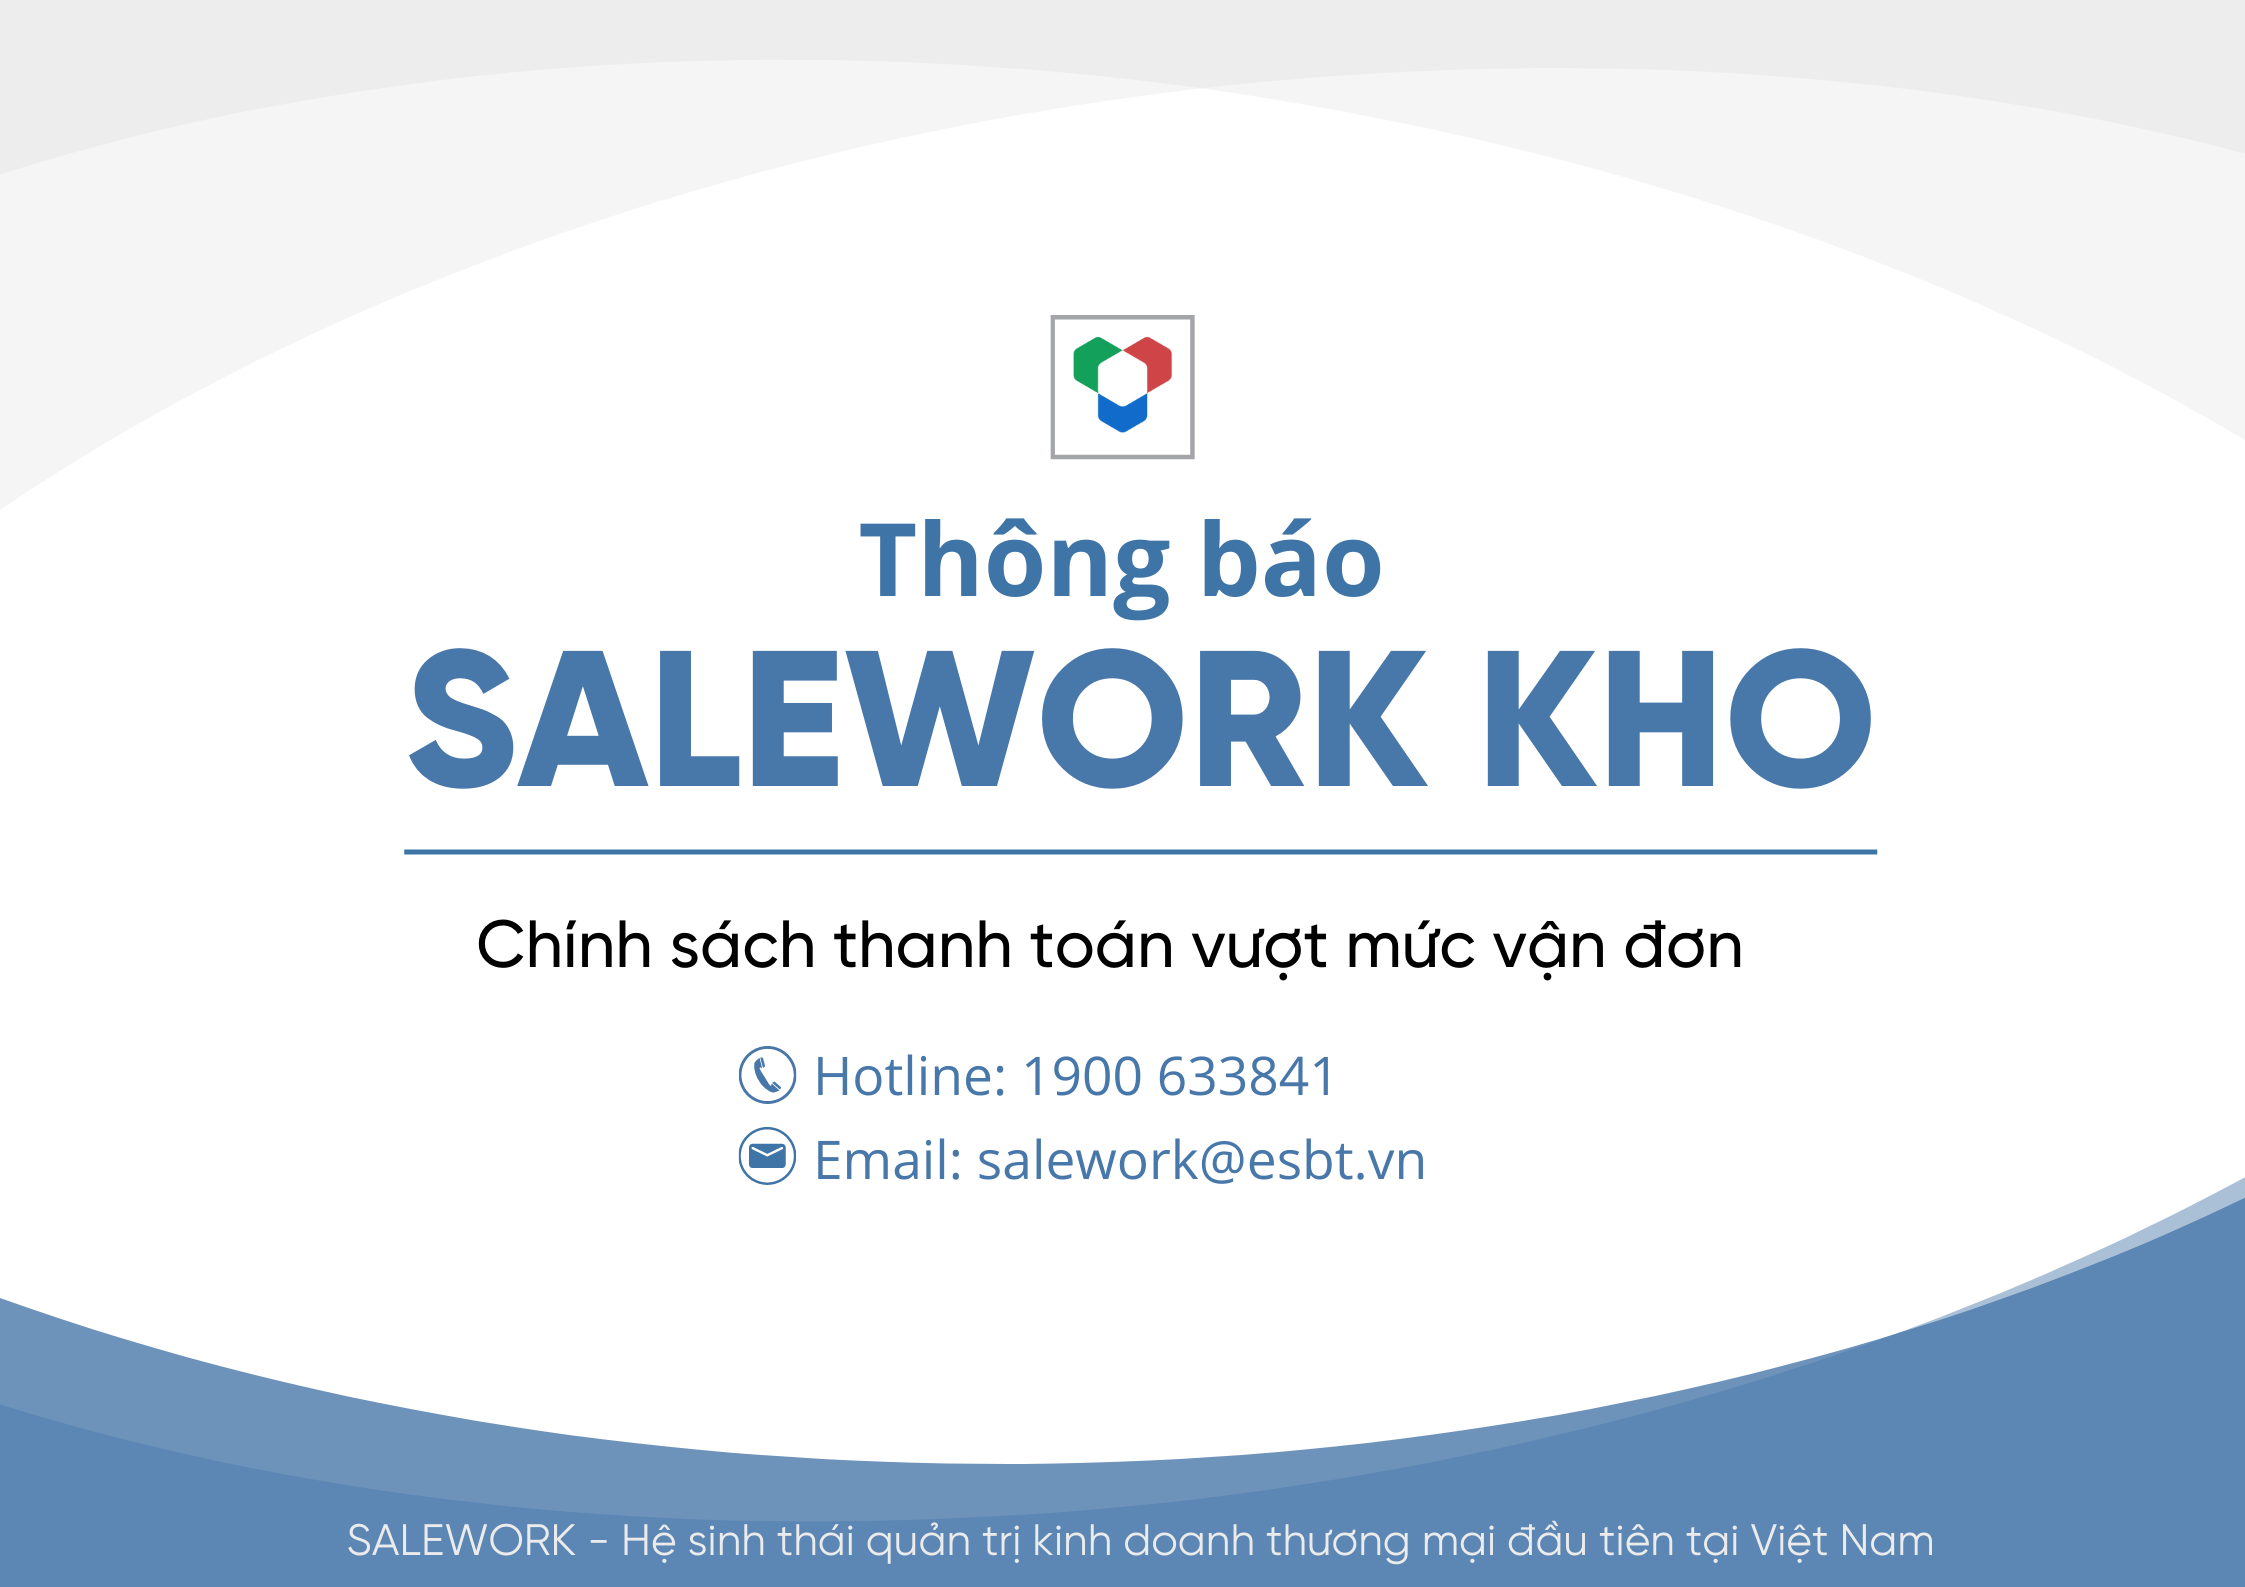 [Thông báo] Cập nhật mới nhất về chính sách thanh toán vượt mức vận đơn tại Salework Kho - 216